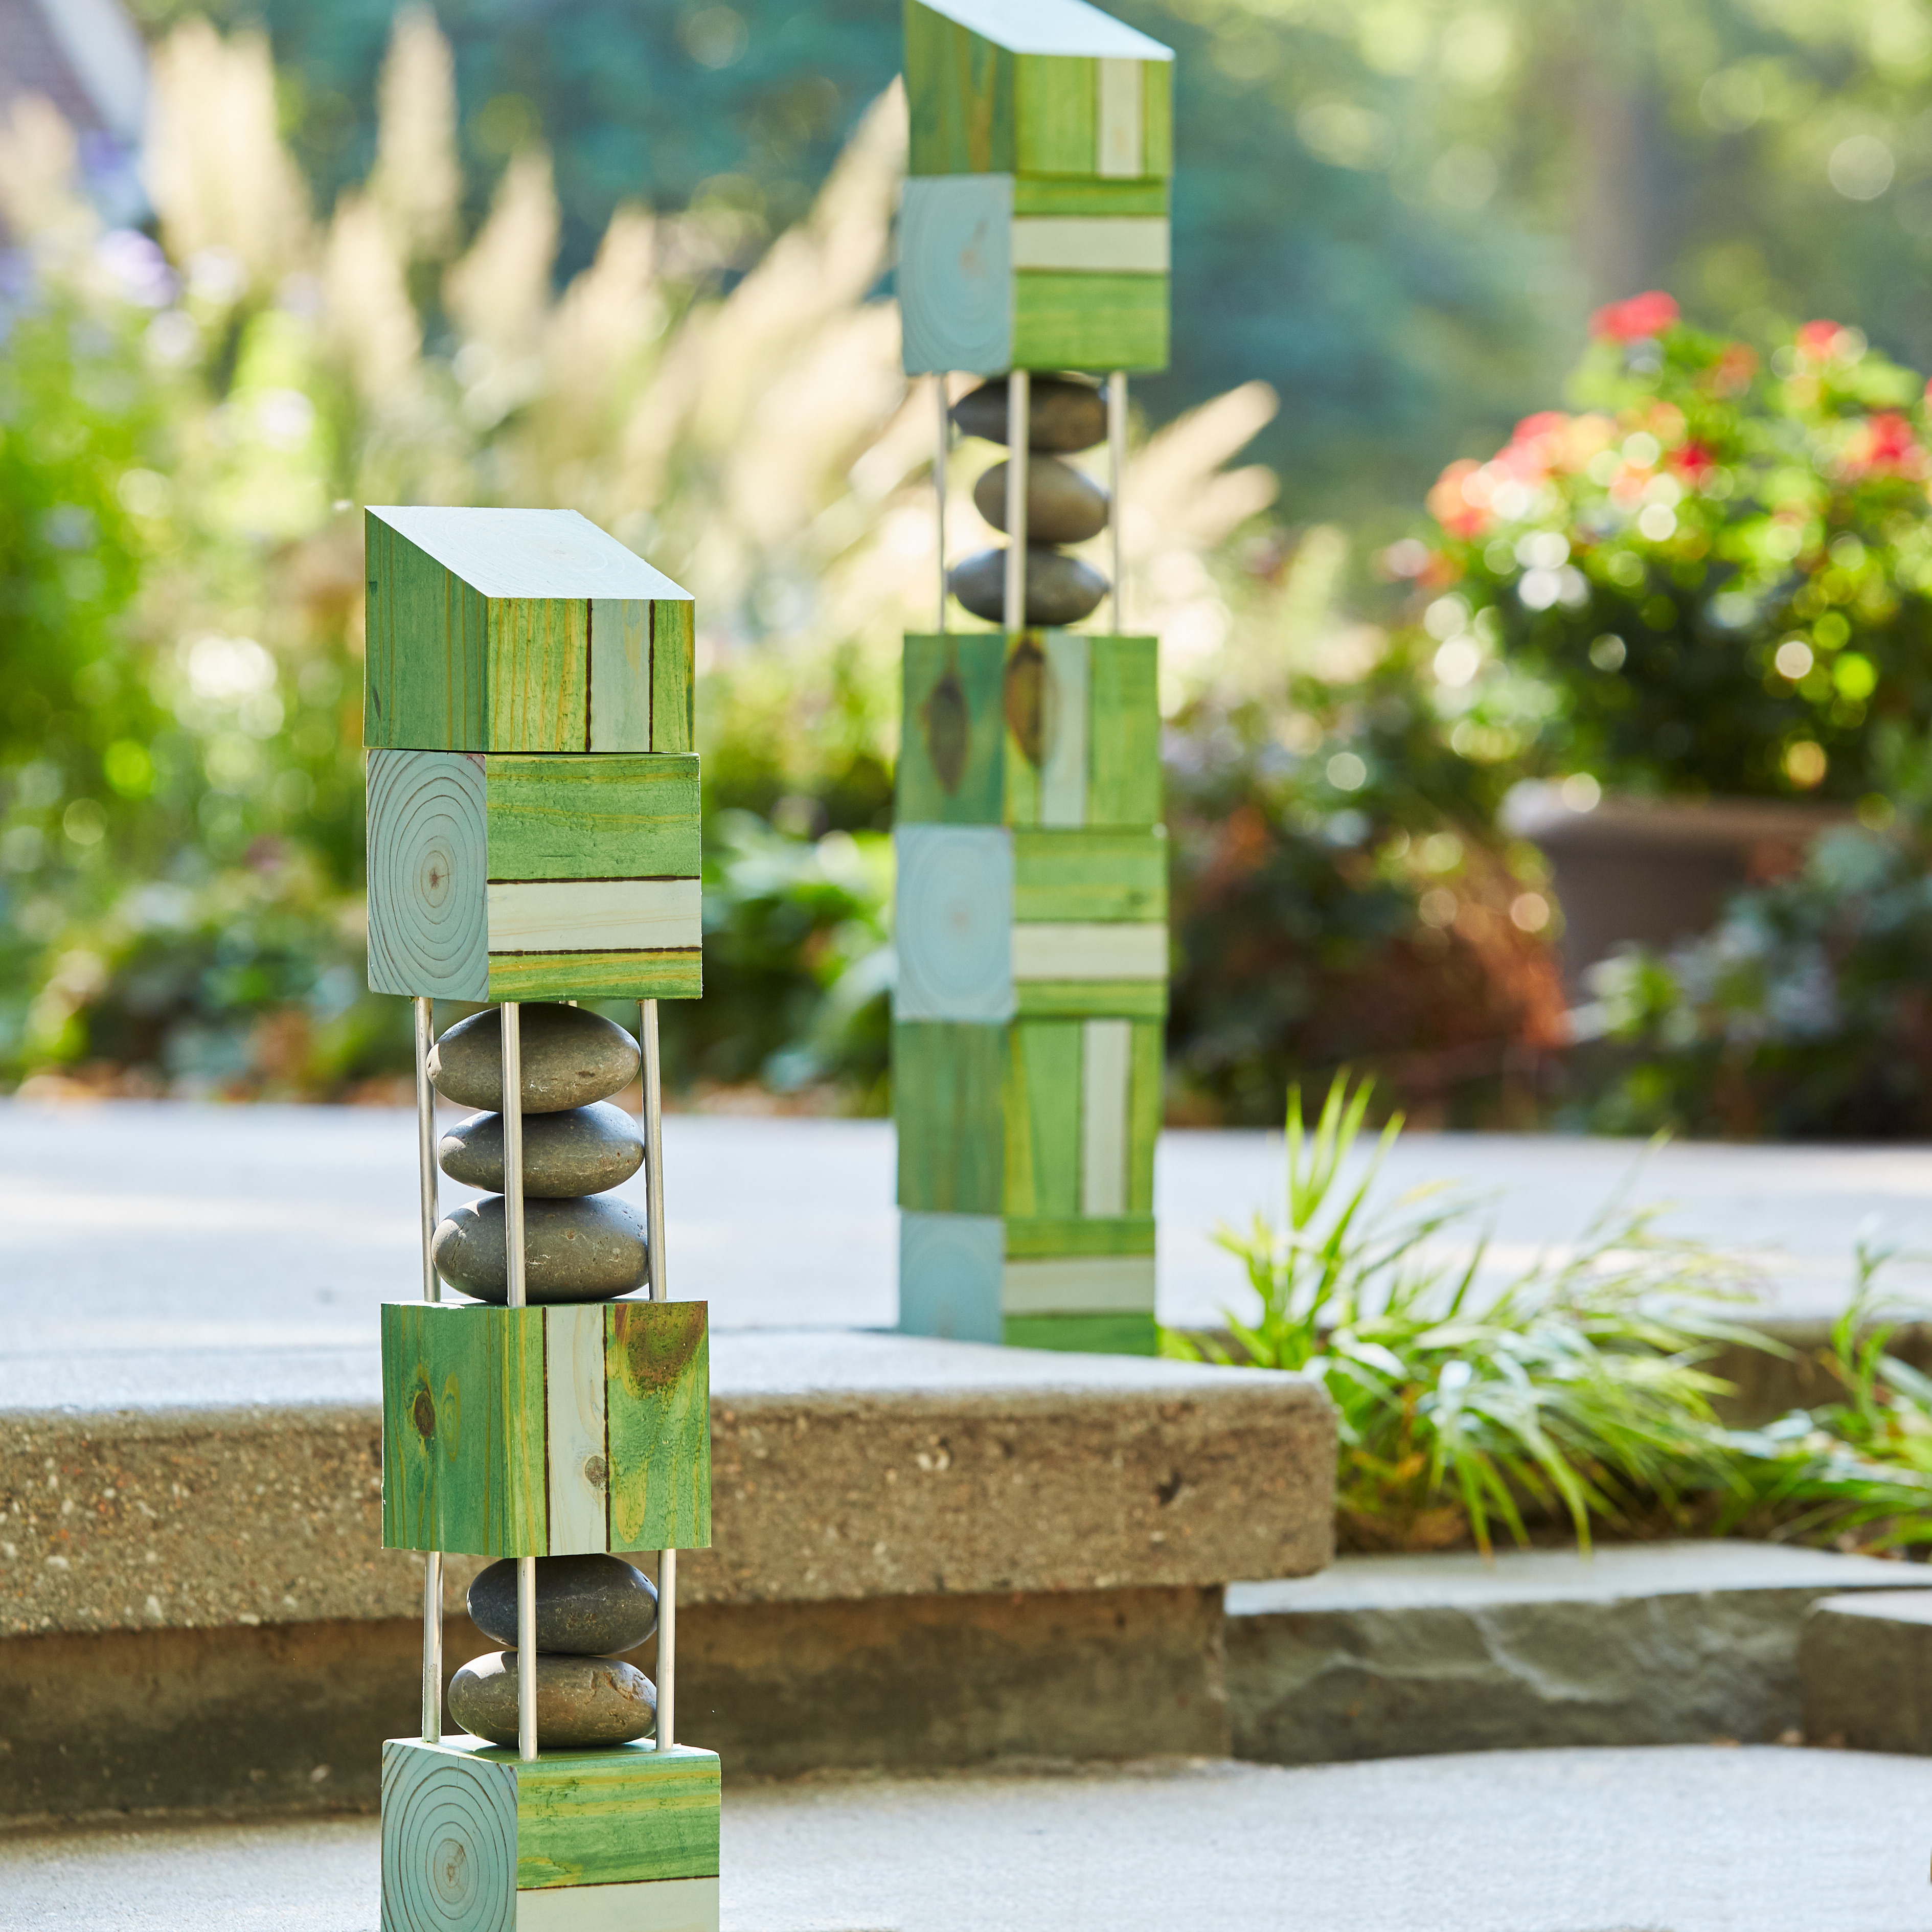 diy-garden-poles-block-design: Pár zahradních tyčí pomáhá definovat kroky odsazení, aby se zabránilo klopýtnutí.